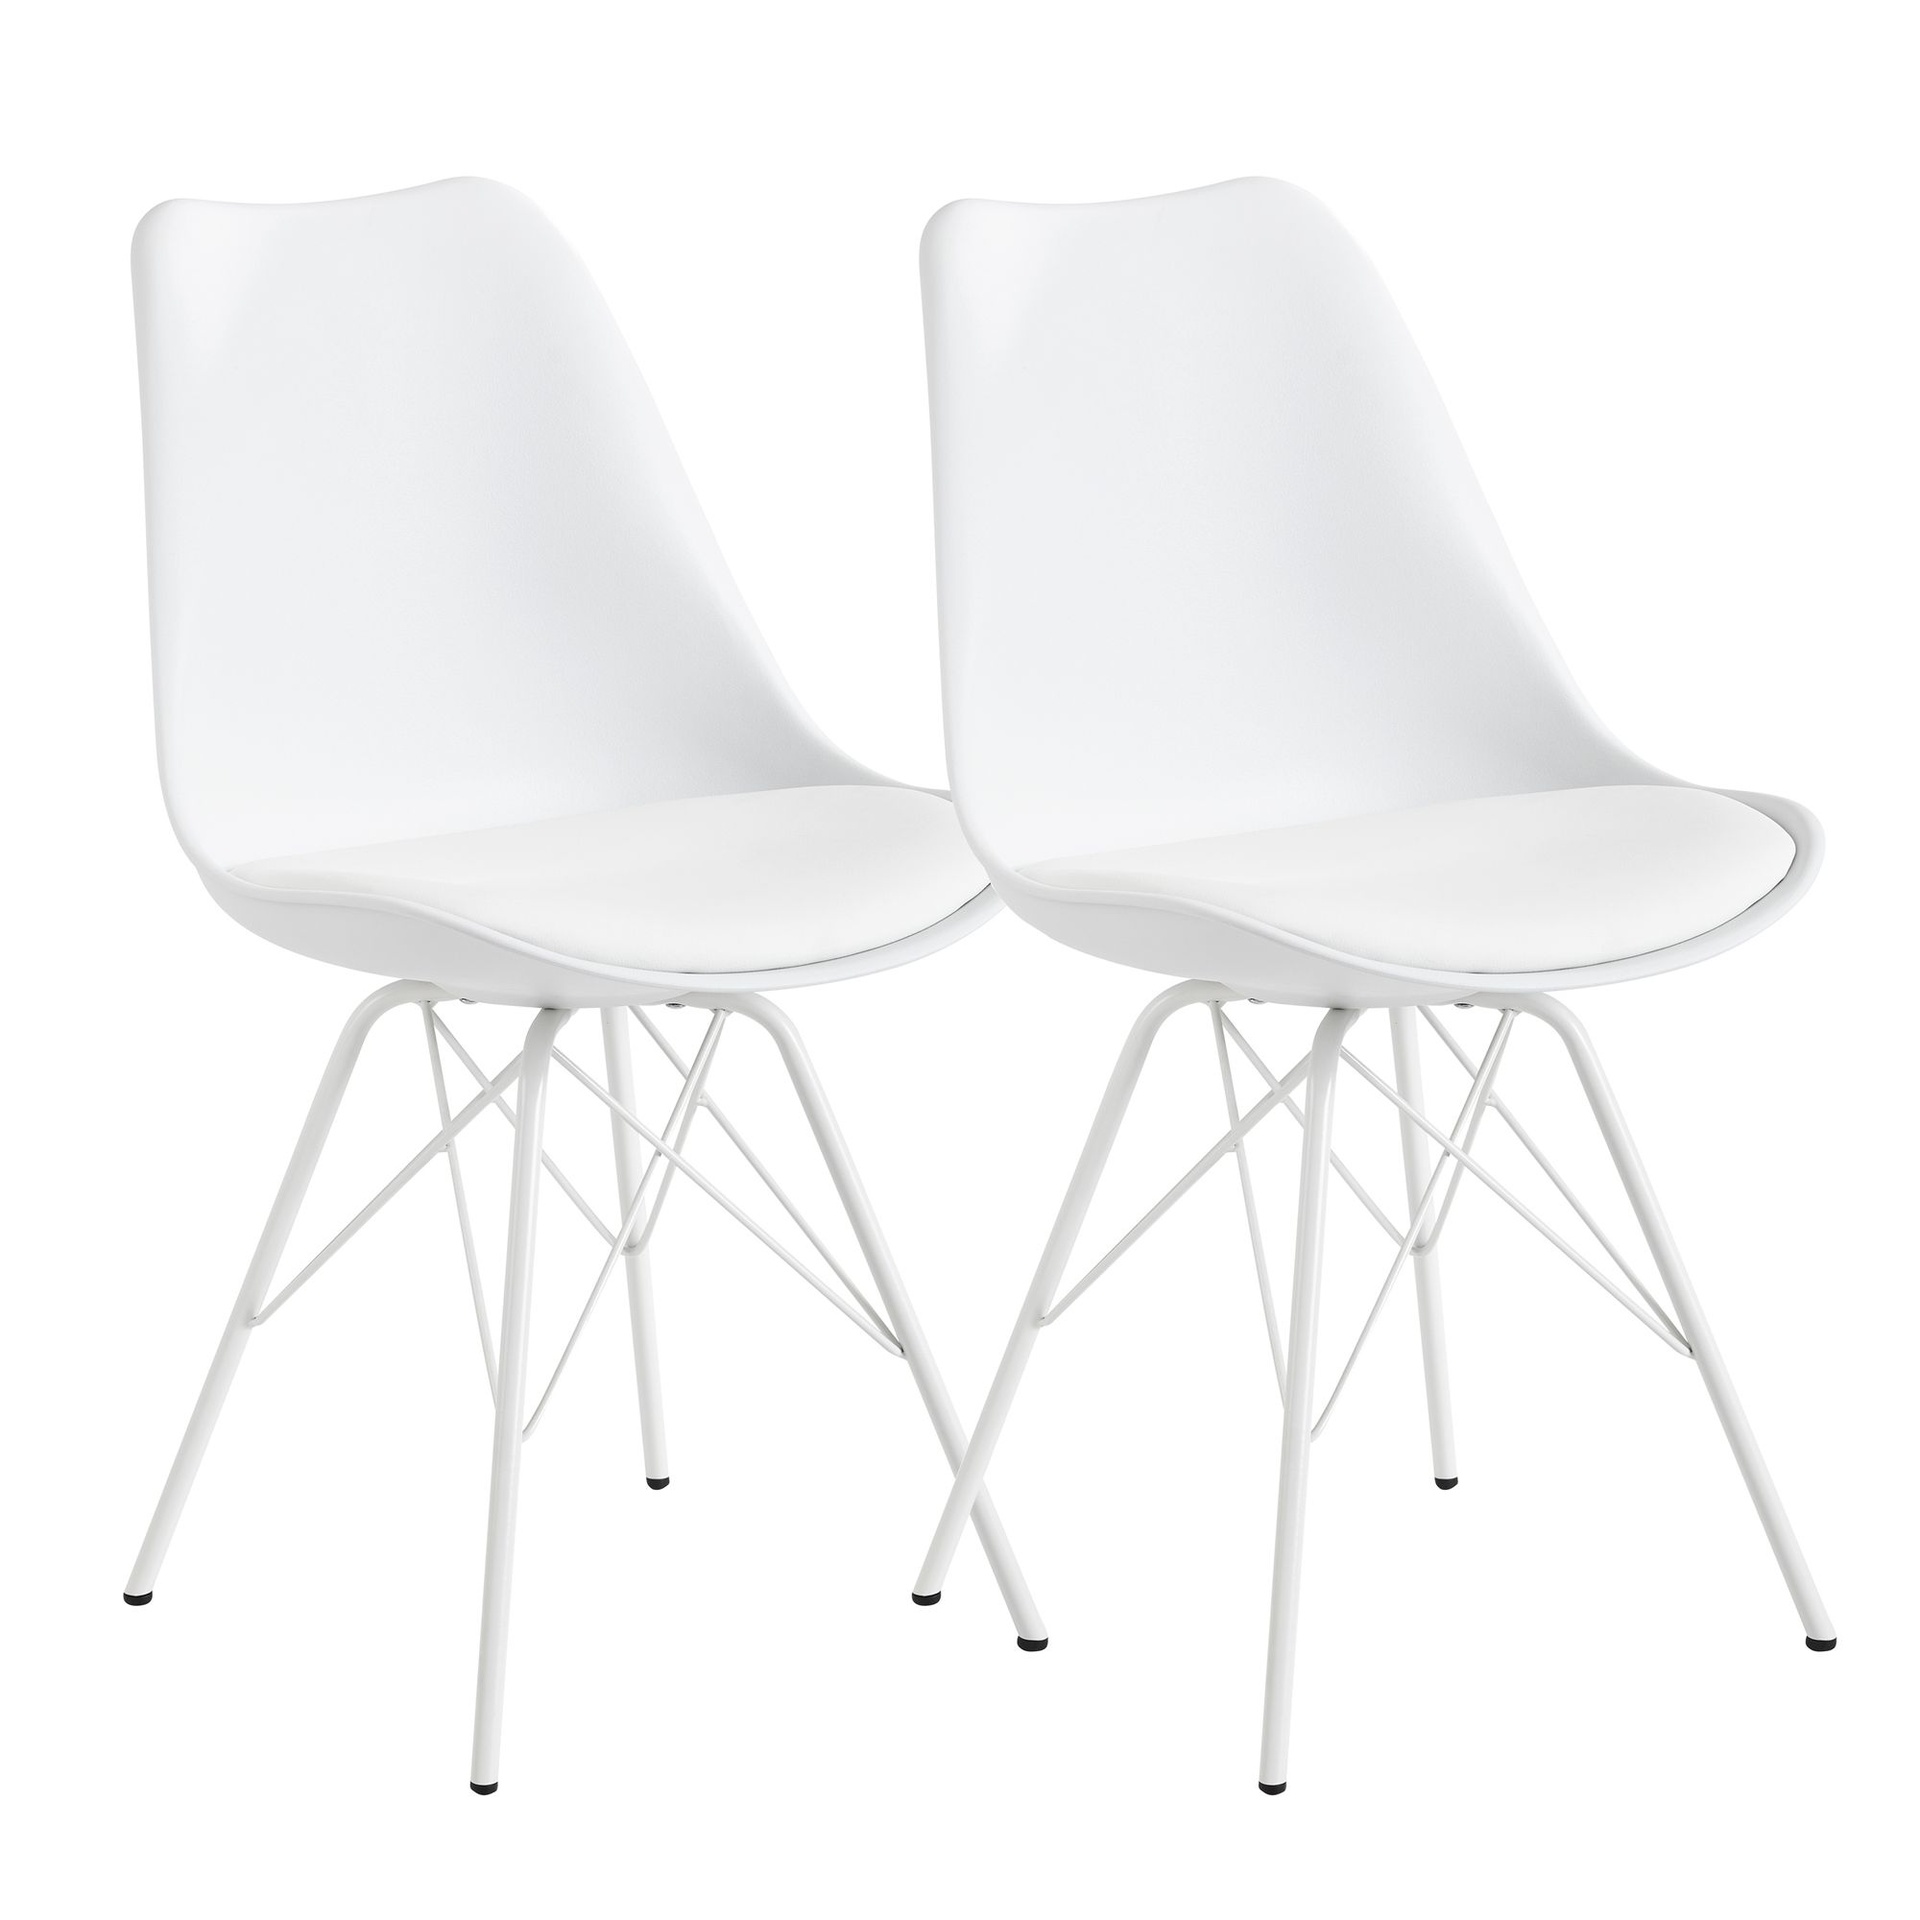 [A10042] Chaise de salle à manger lot de 2 en plastique blanc design scandinave